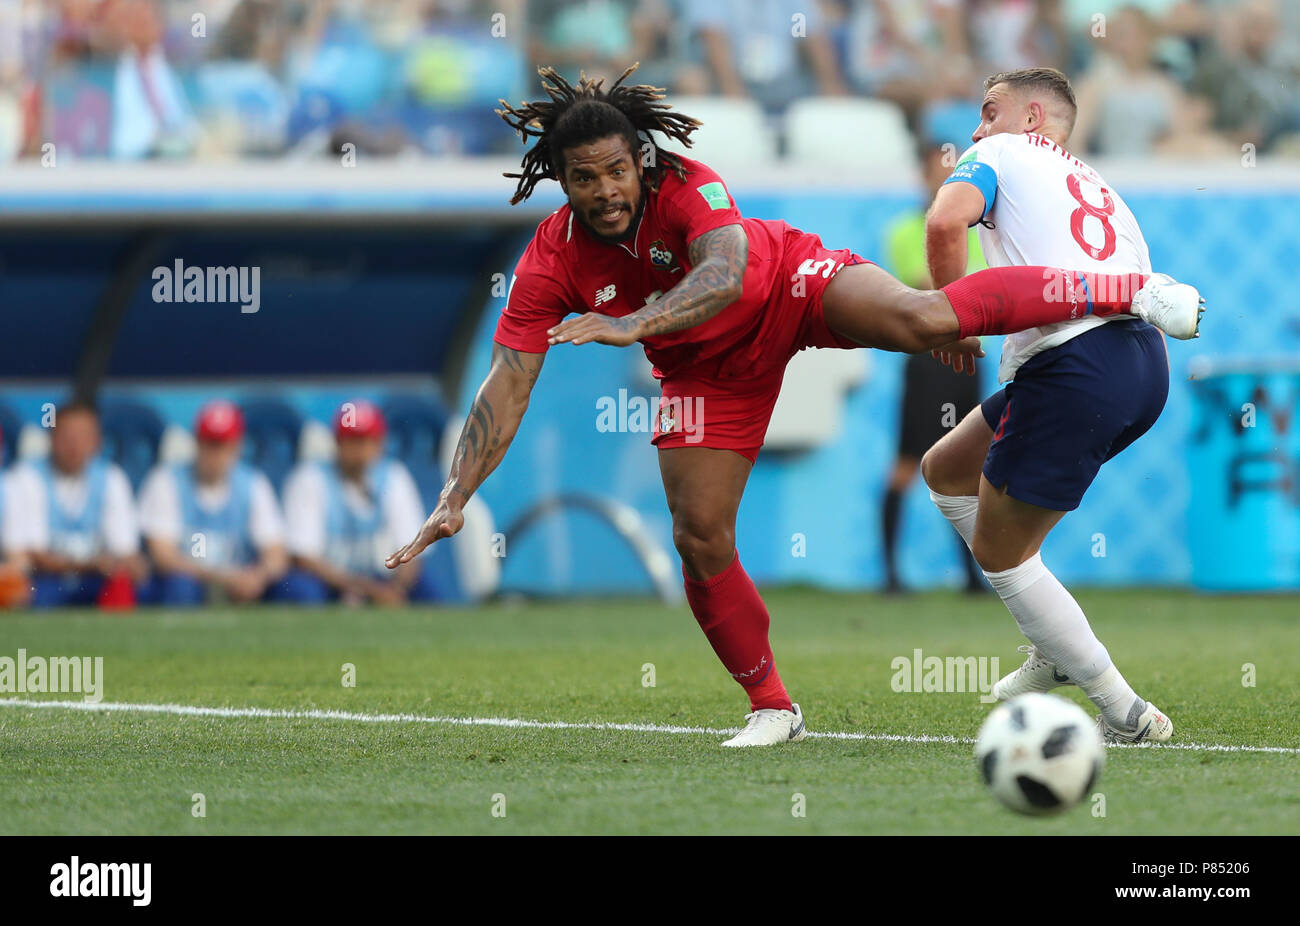 Roman Torres do Panama disputa a bola com time da Inglaterra realizada neste domingo, 24, no Estádio Nizhny Novgorod, na Rússia, válida pela 2ª rodada do Grupo G da Copa do Mundo 2018. Stock Photo